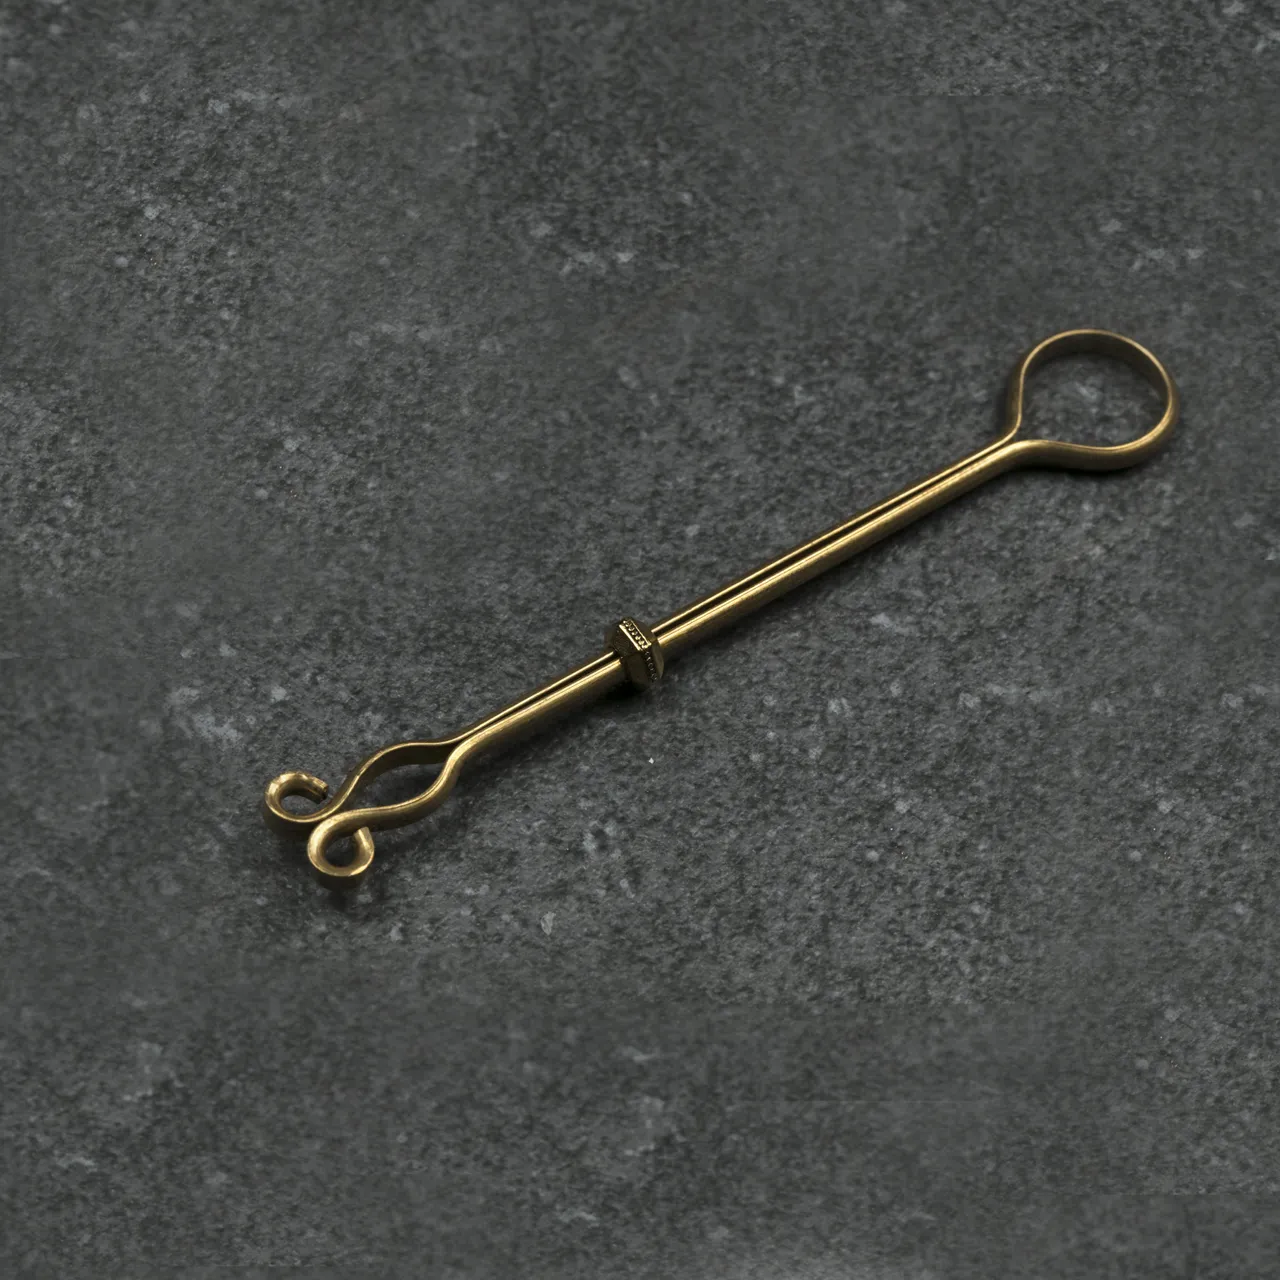 The Steadfast - Artisanal Handmade Brass Roach Clip photo 1